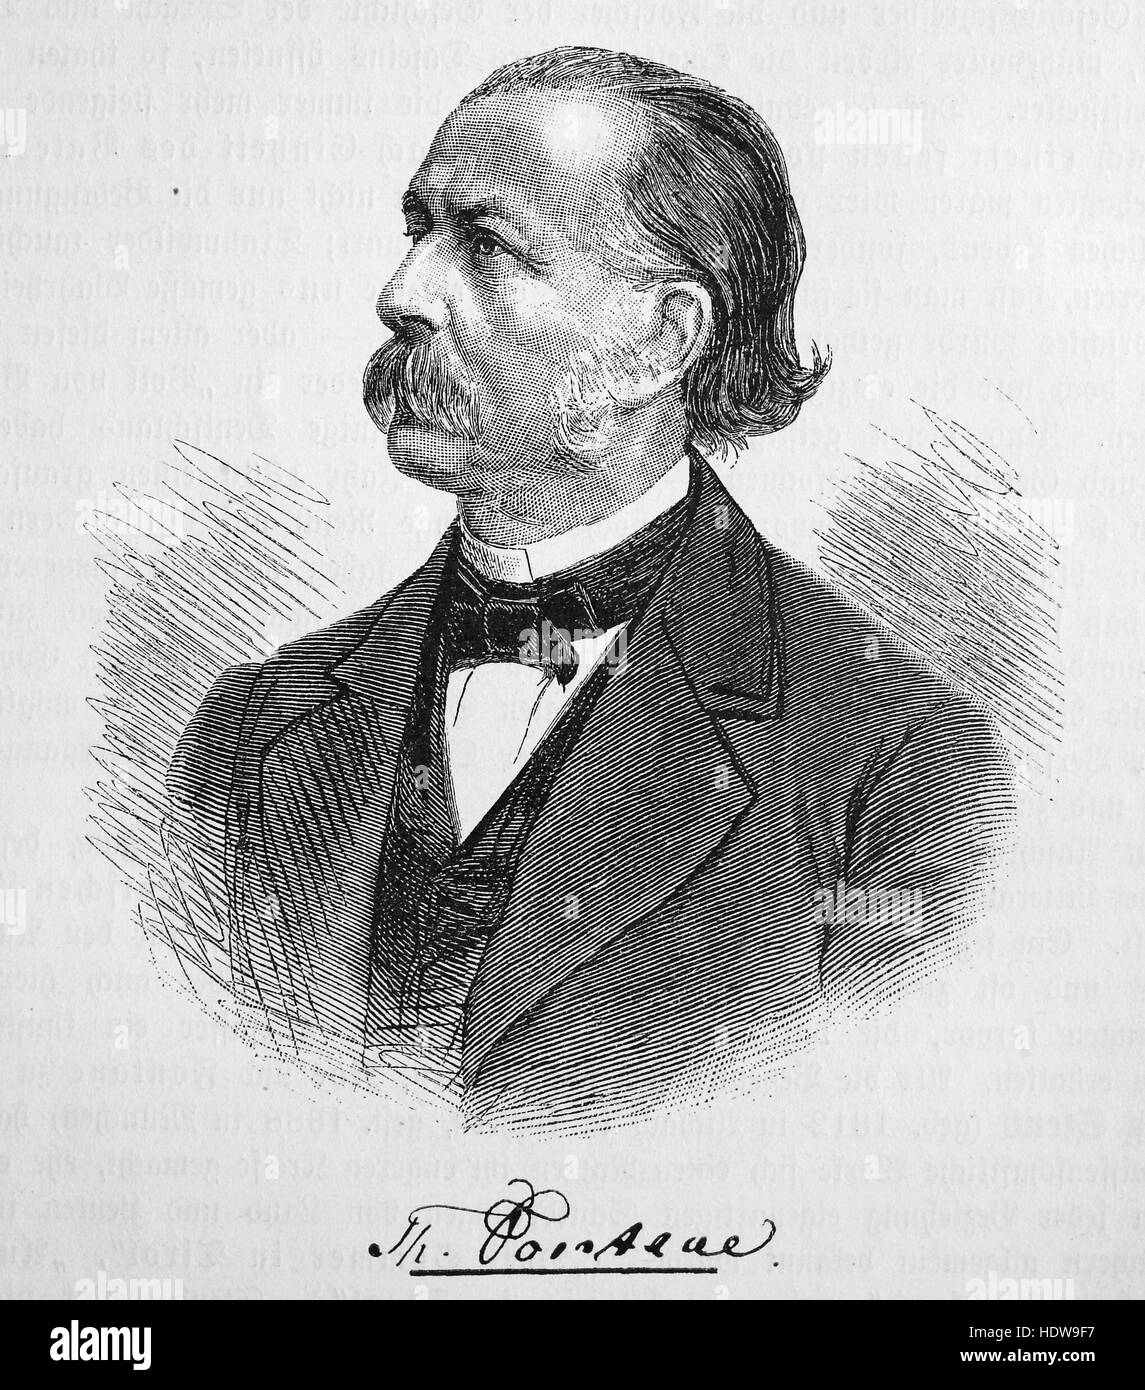 Theodor Fontane, 1819-1898, un romancier et poète allemand, gravure sur bois de l'année 1880 Banque D'Images